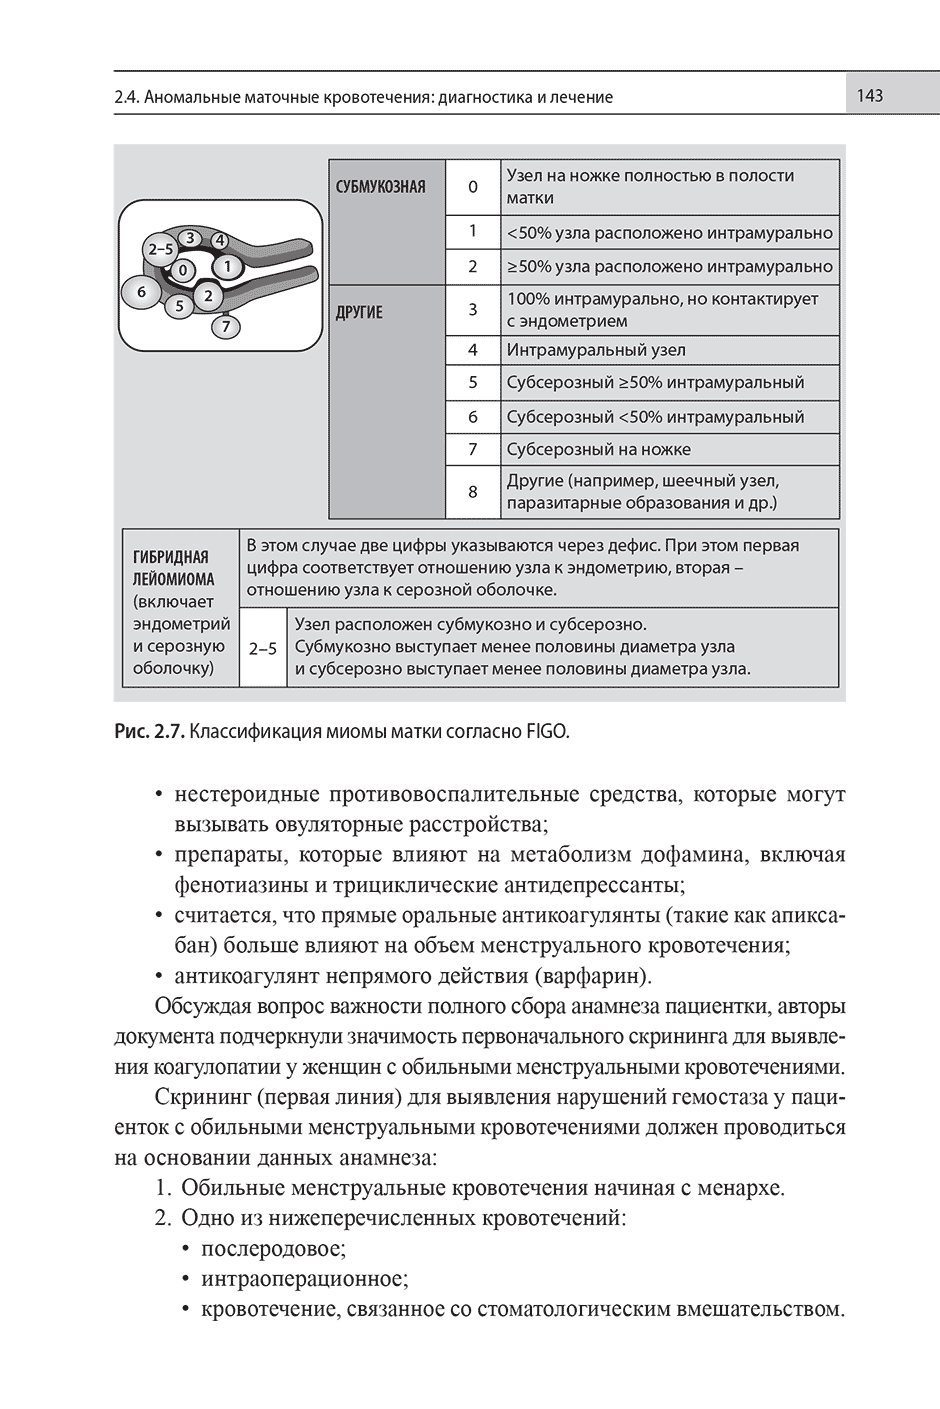 Рис. 2.7. Классификация миомы матки согласно FIGO.